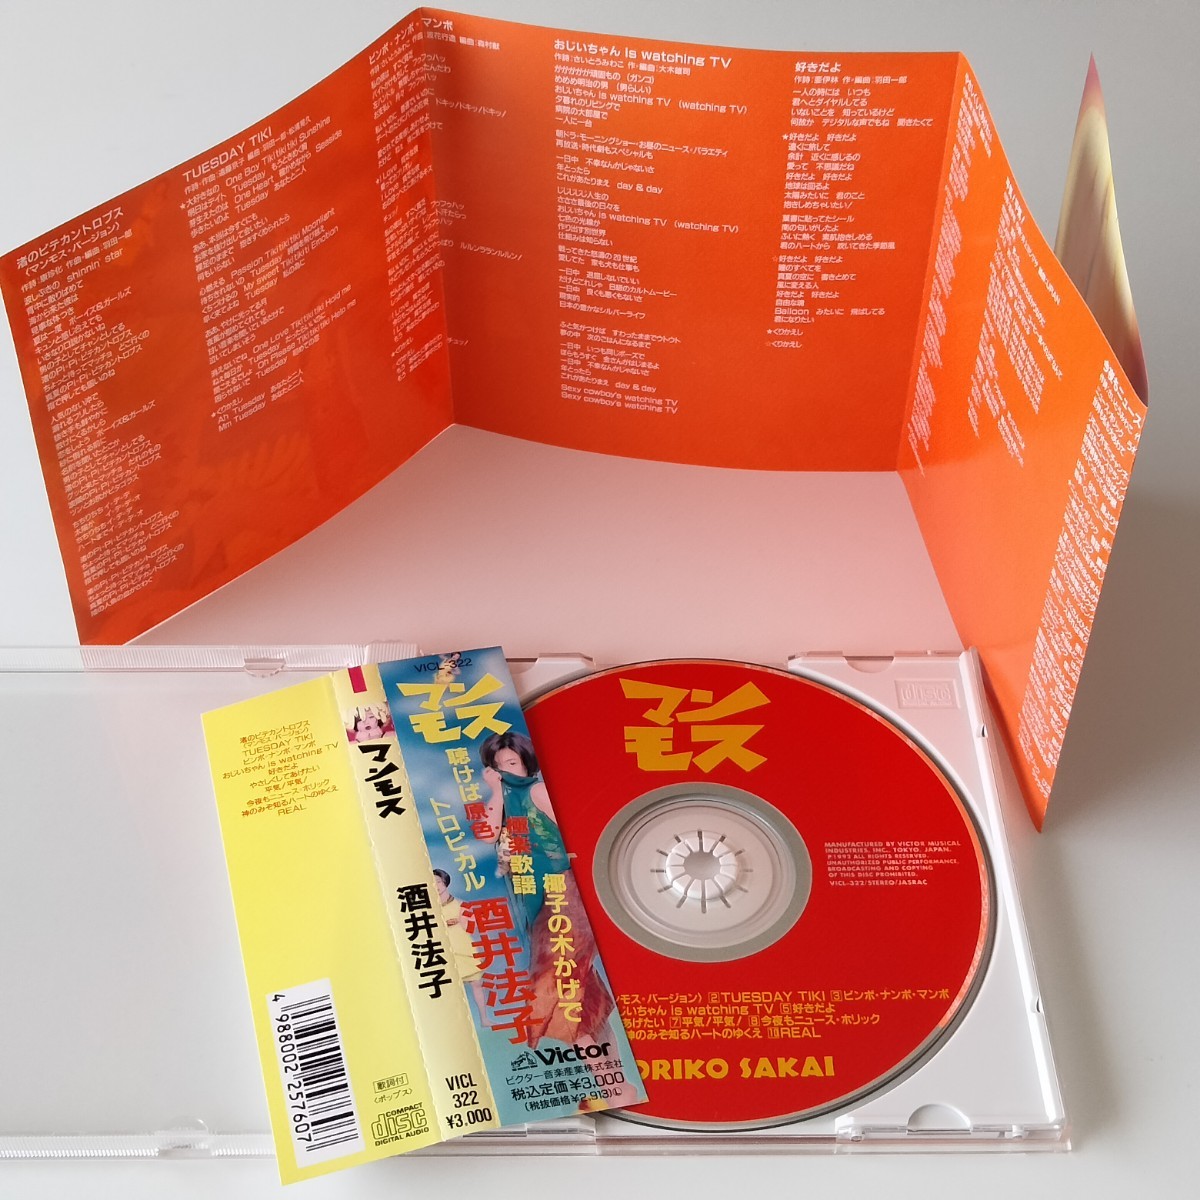 【帯付CD】酒井法子 / マンモス (VICL-322) 1992年アルバム NORIKO SAKAI のりピー さいとうみわこ_画像4